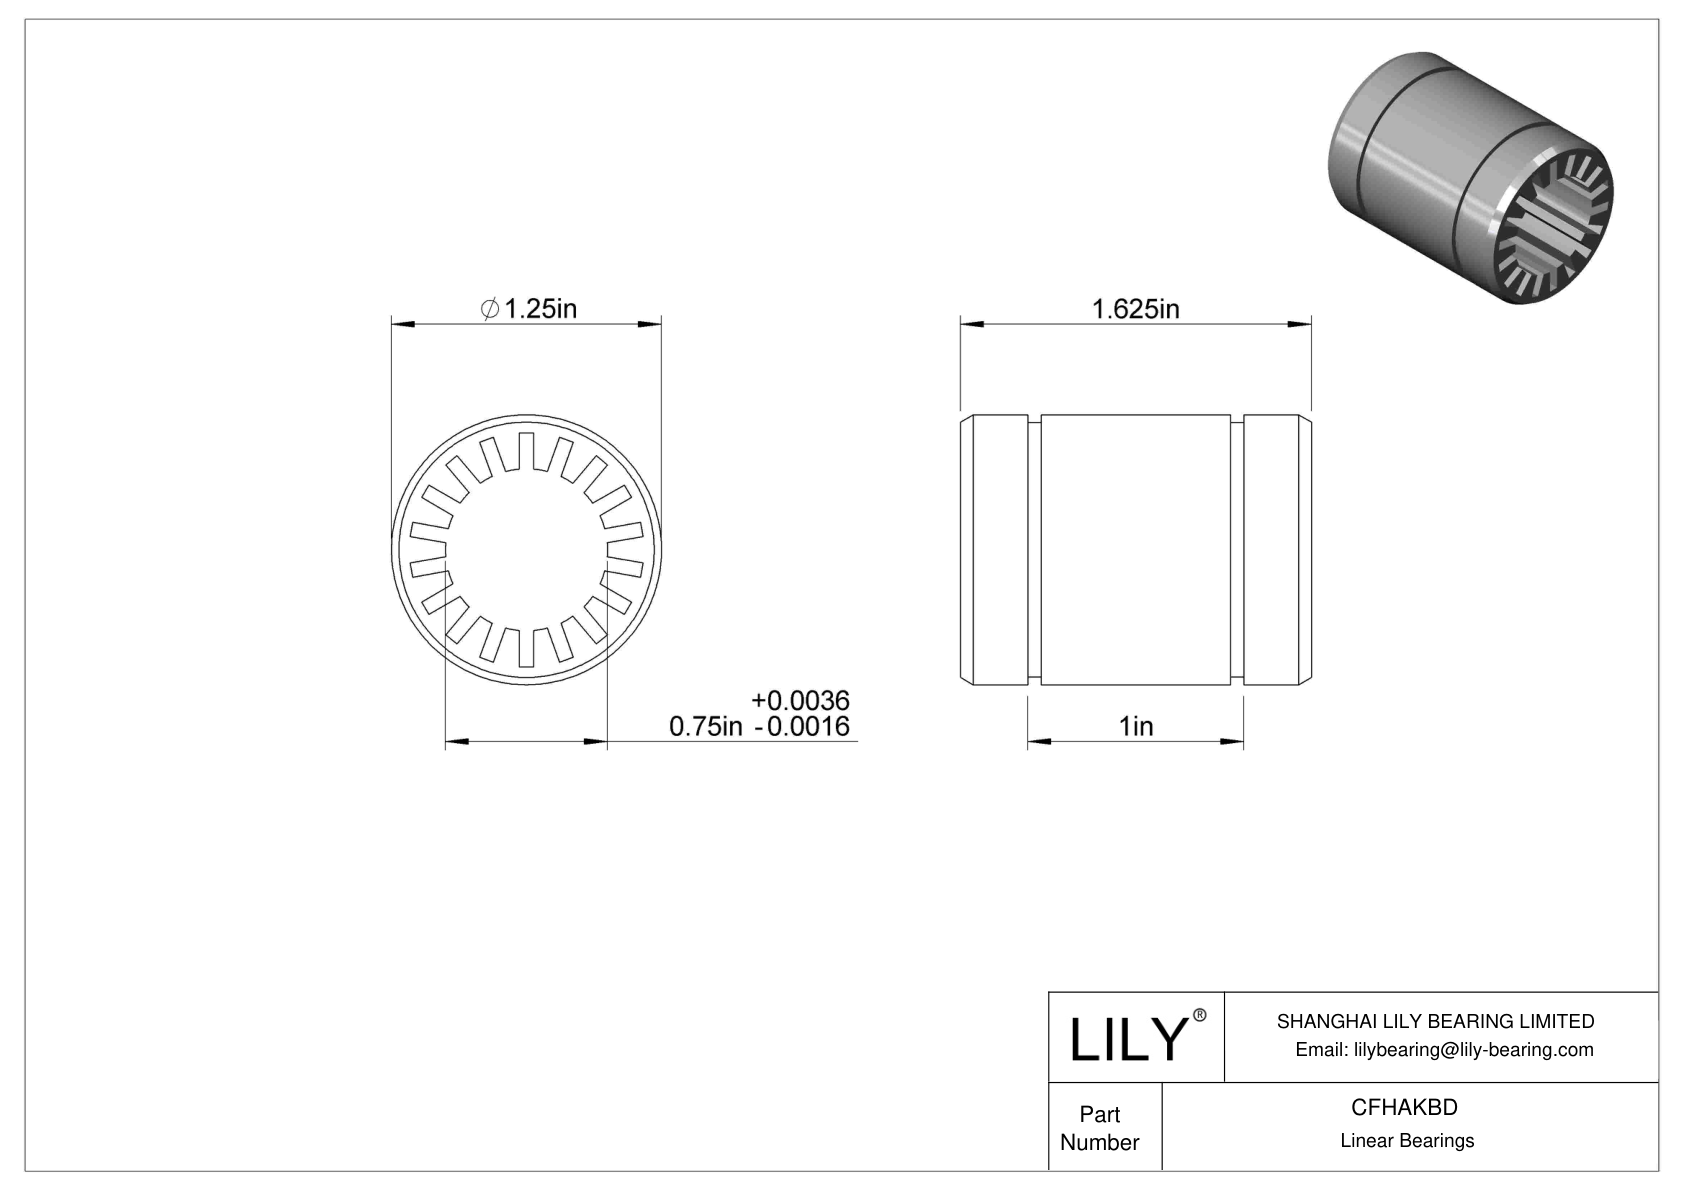 CFHAKBD Dust-Resistant Linear Sleeve Bearings cad drawing